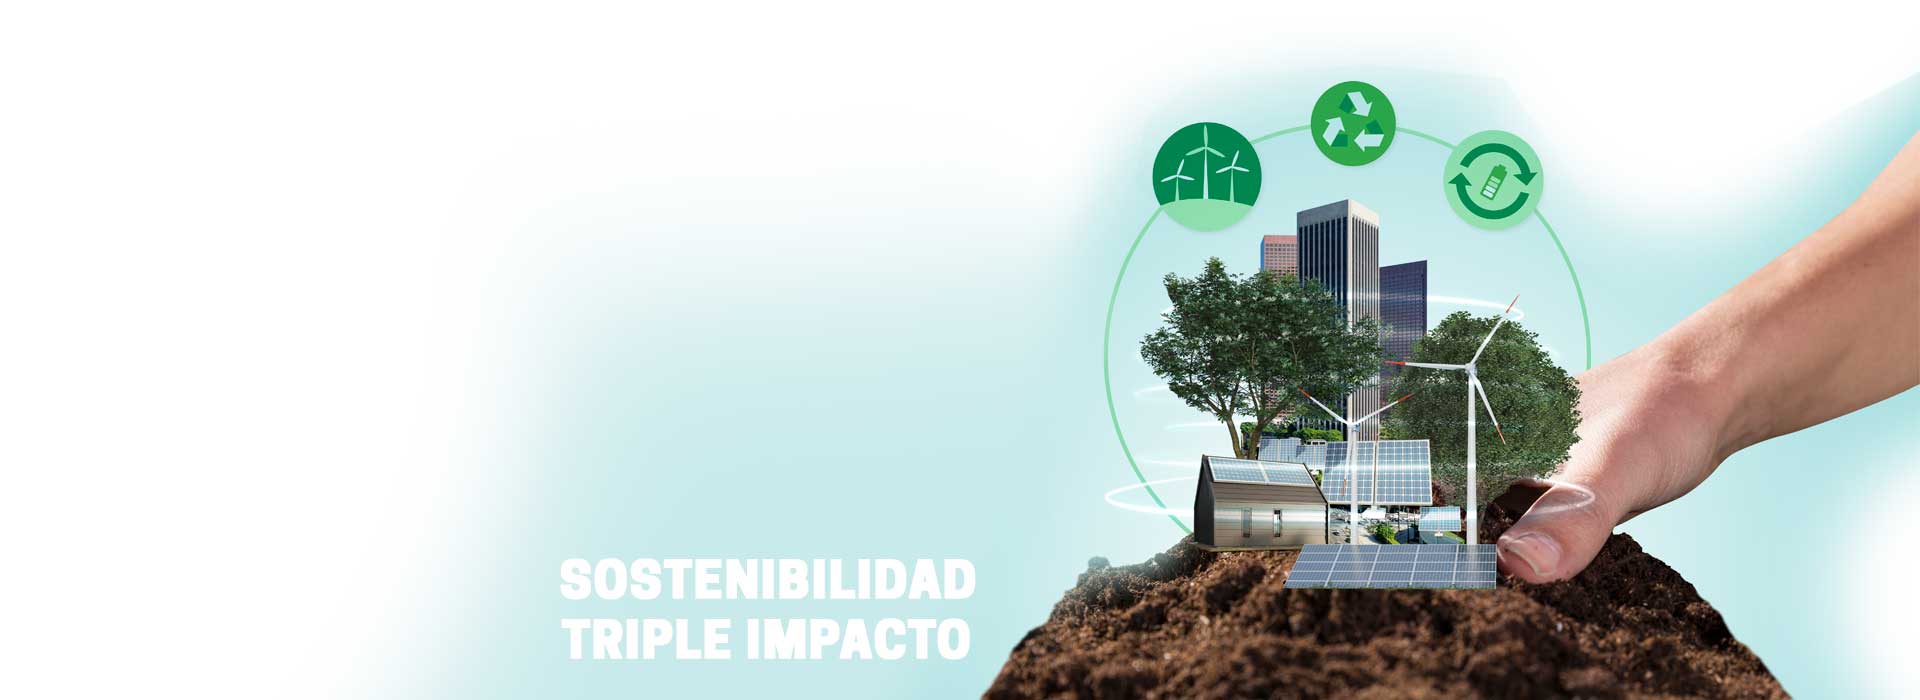 sostenibilidad-construcciones-triple-impacto-amigables-sostenibles-constructora-resek-posadas-misiones